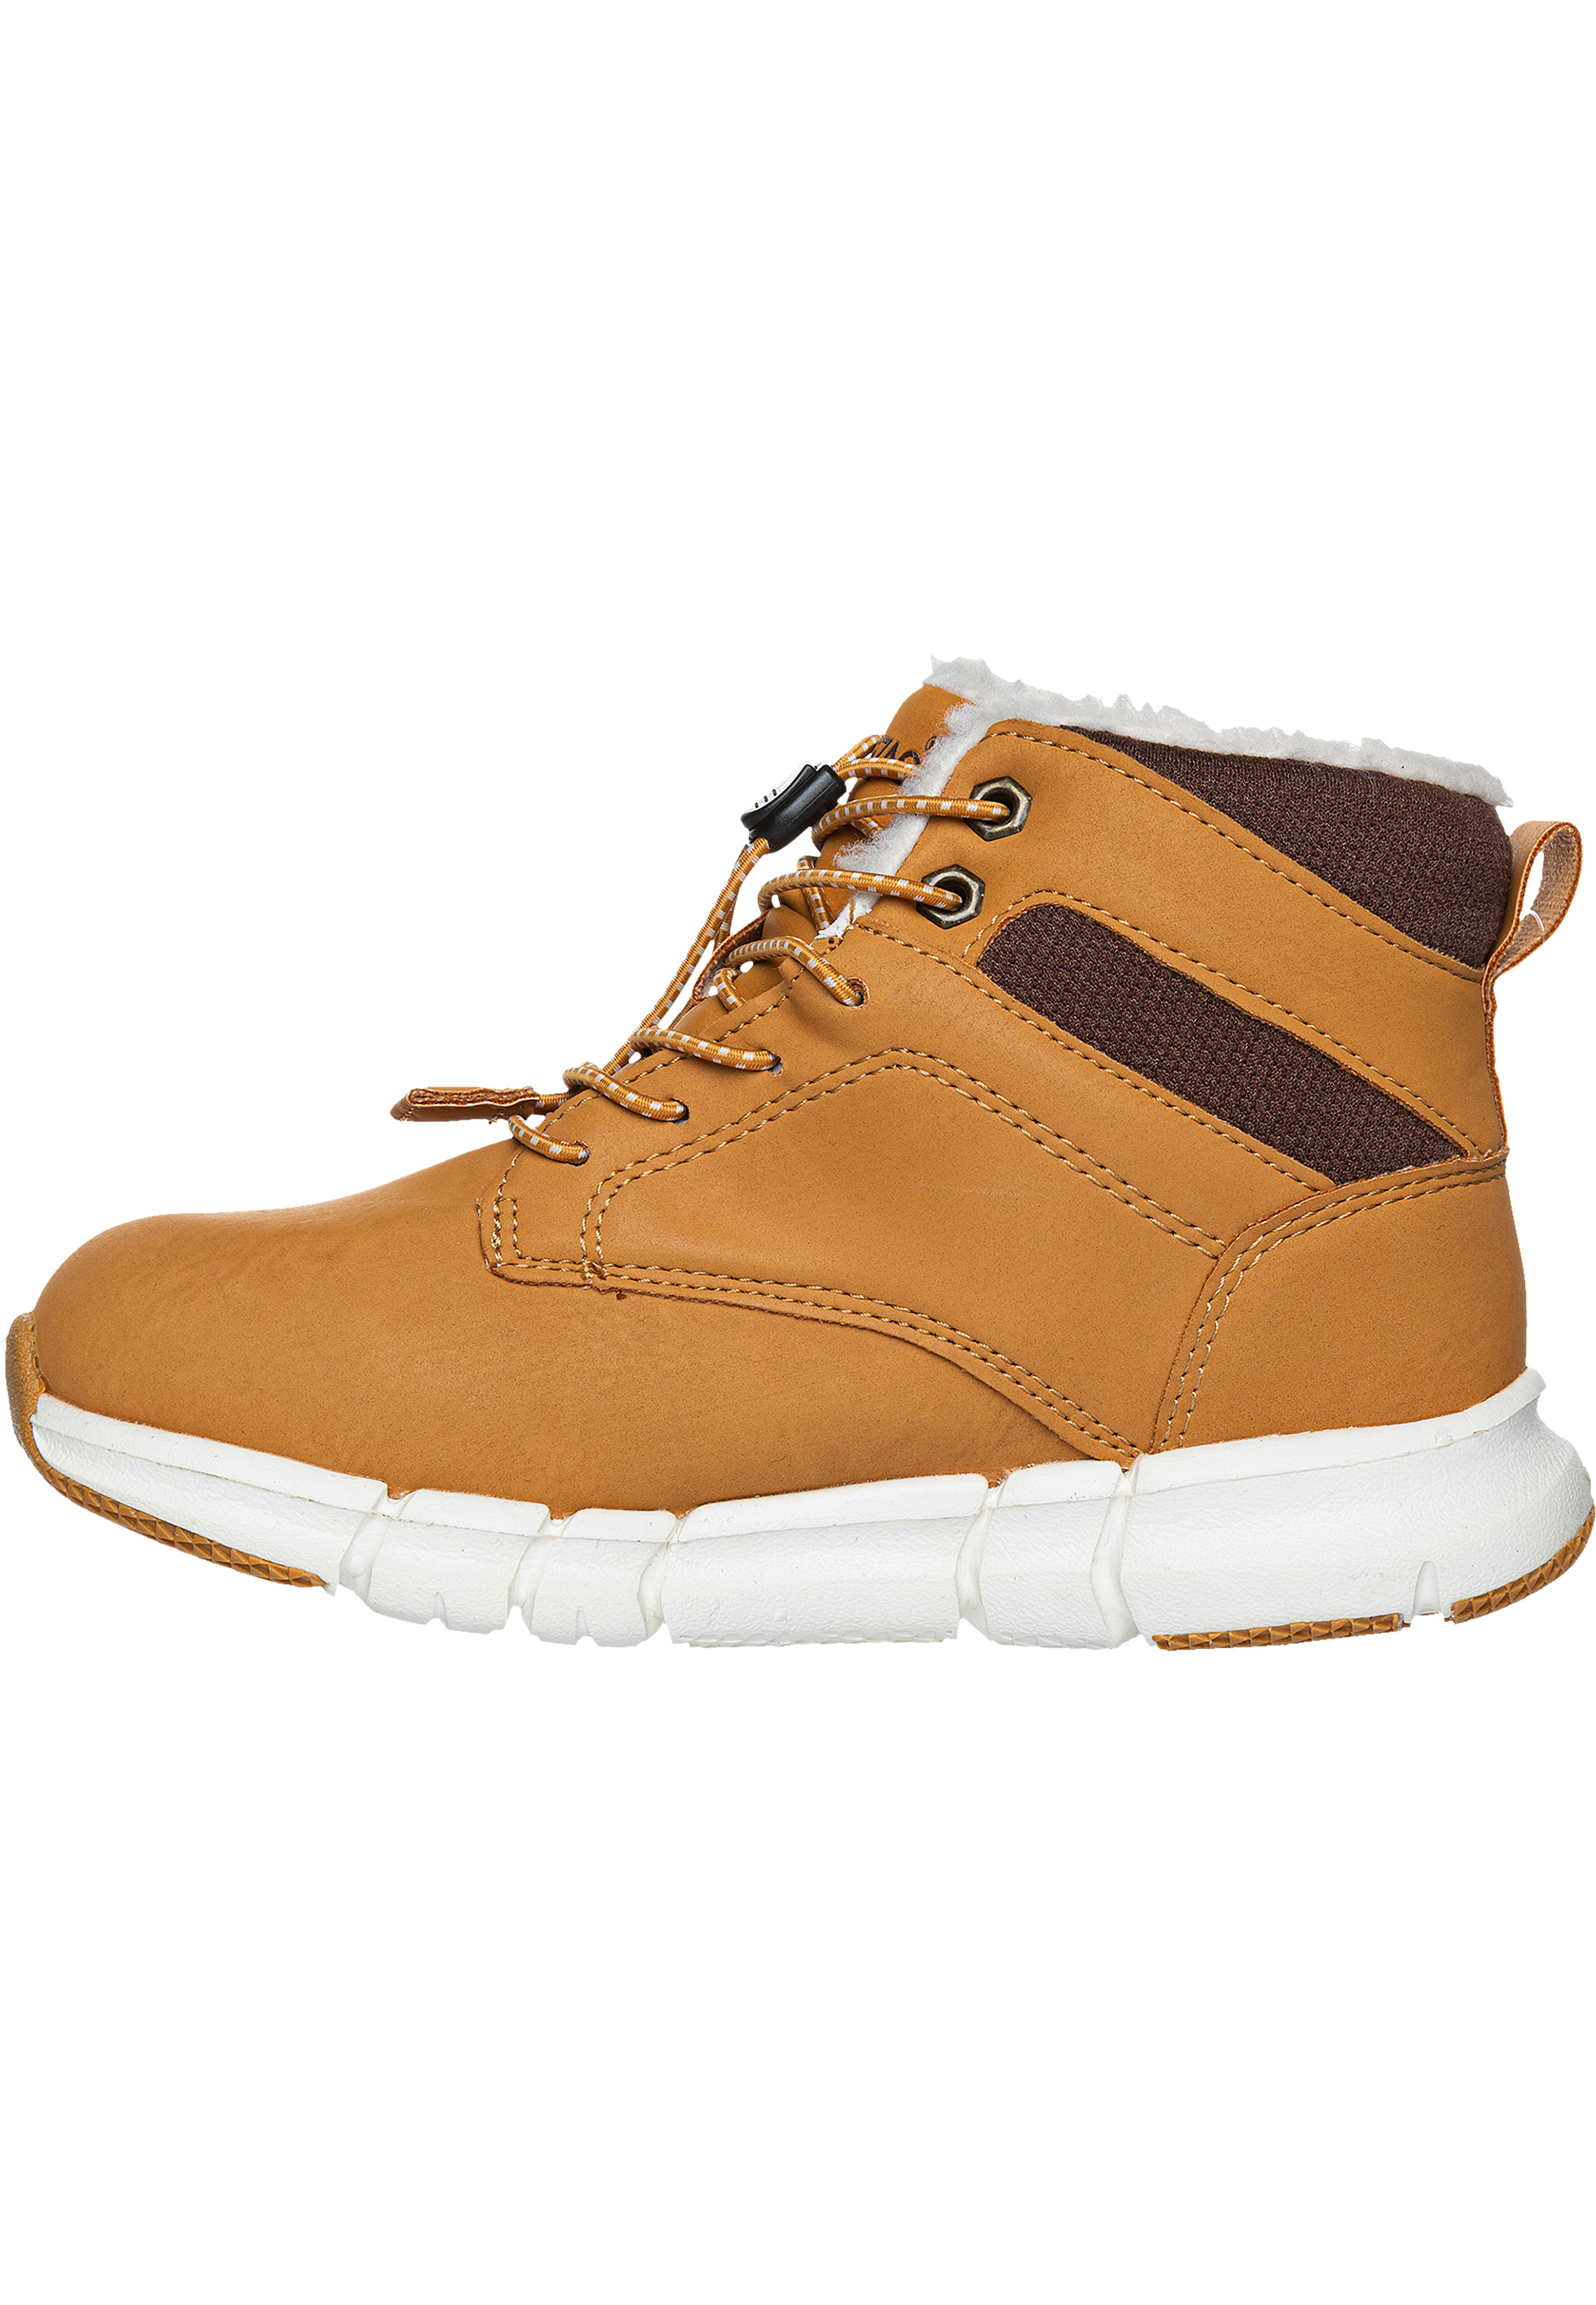 Ботинки Zigzag Boots Pumien, цвет 5006 Sudan Brown цена и фото